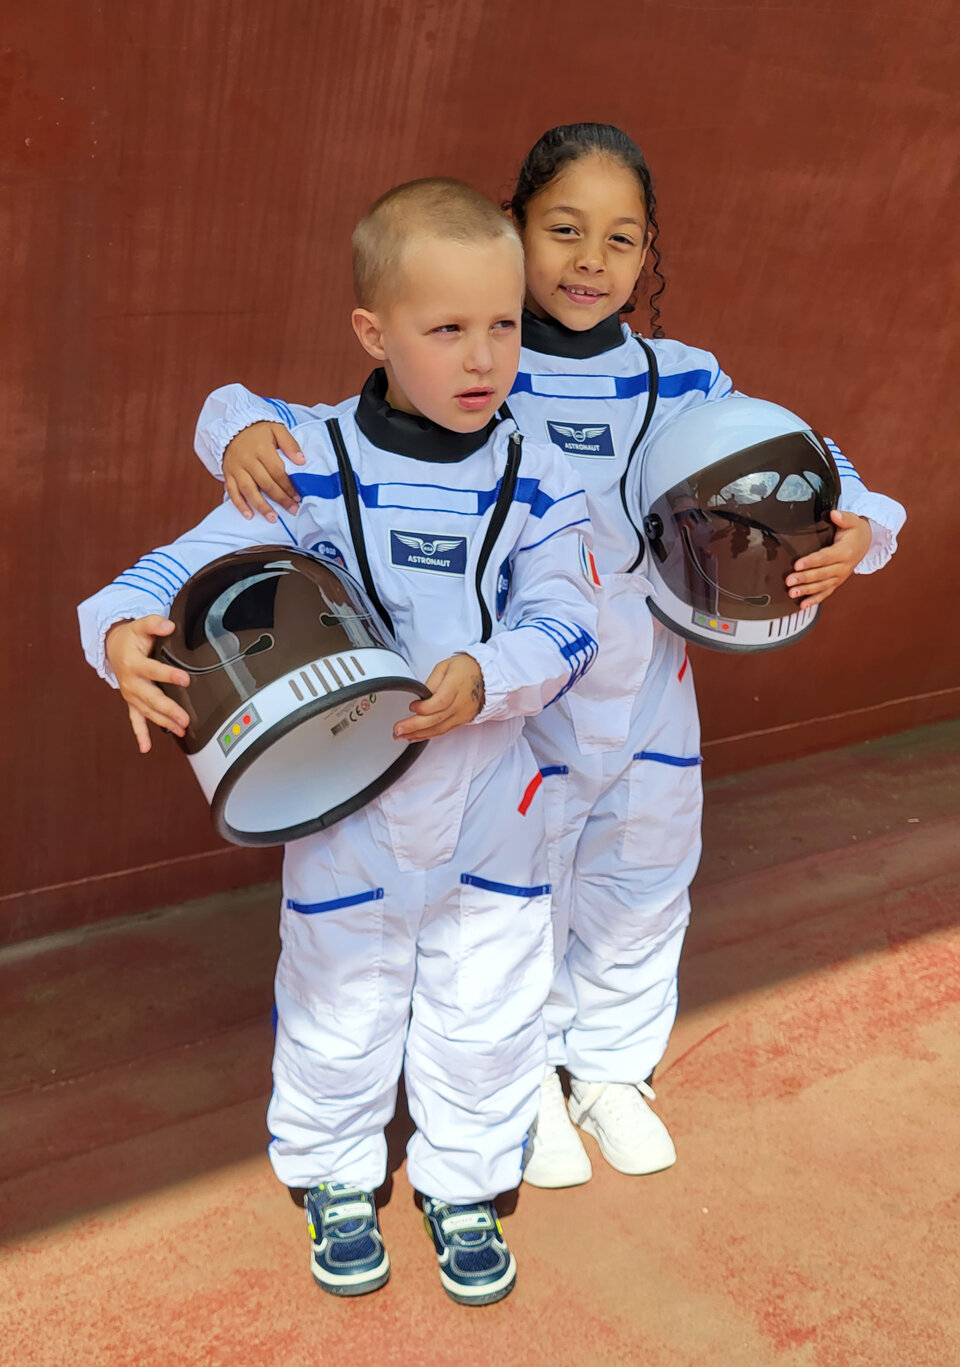 Kinder fragen sich oft, was sie einmal werden wollen, wenn sie groß sind. Ein Verkleidungsspiel für Astronaut*innen könnte der Funke sein, der zu einer zukünftigen Karriere im Weltraum führt.